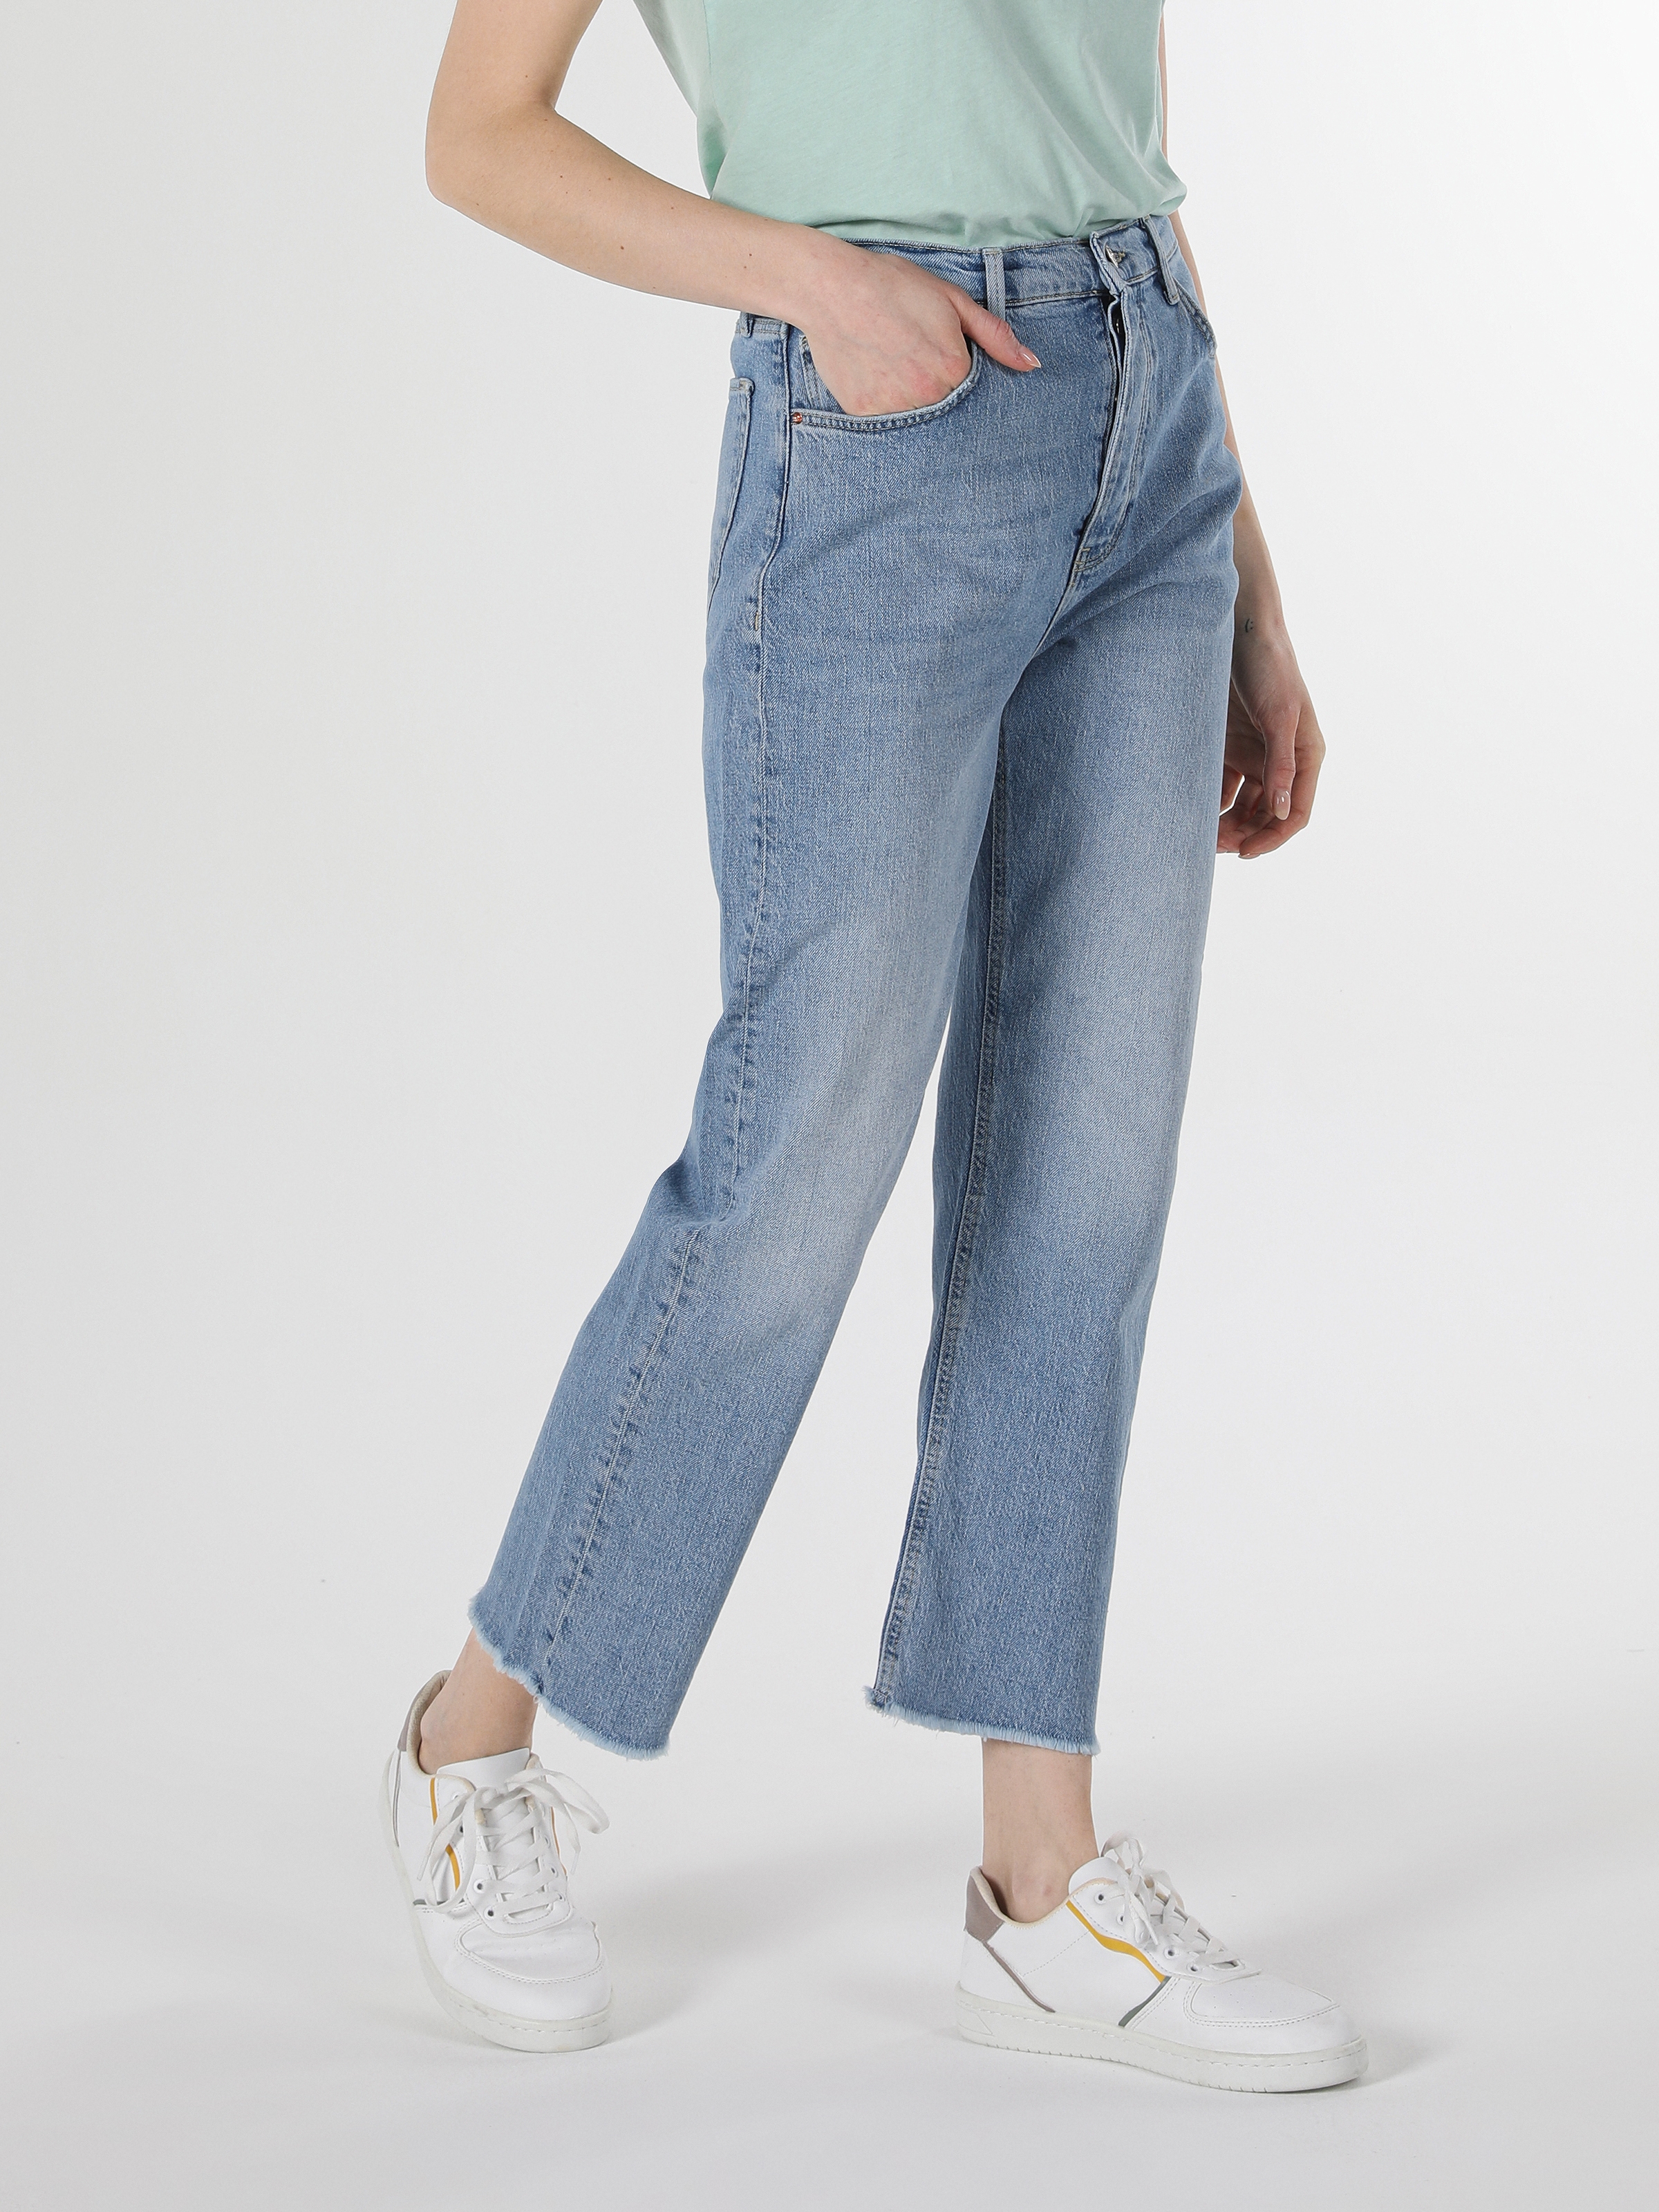 Afficher les détails de Pantalon En Jean Bleu Taille Haute Pour Femme, Coupe Régulière, Jambe Droite, 900 Laris